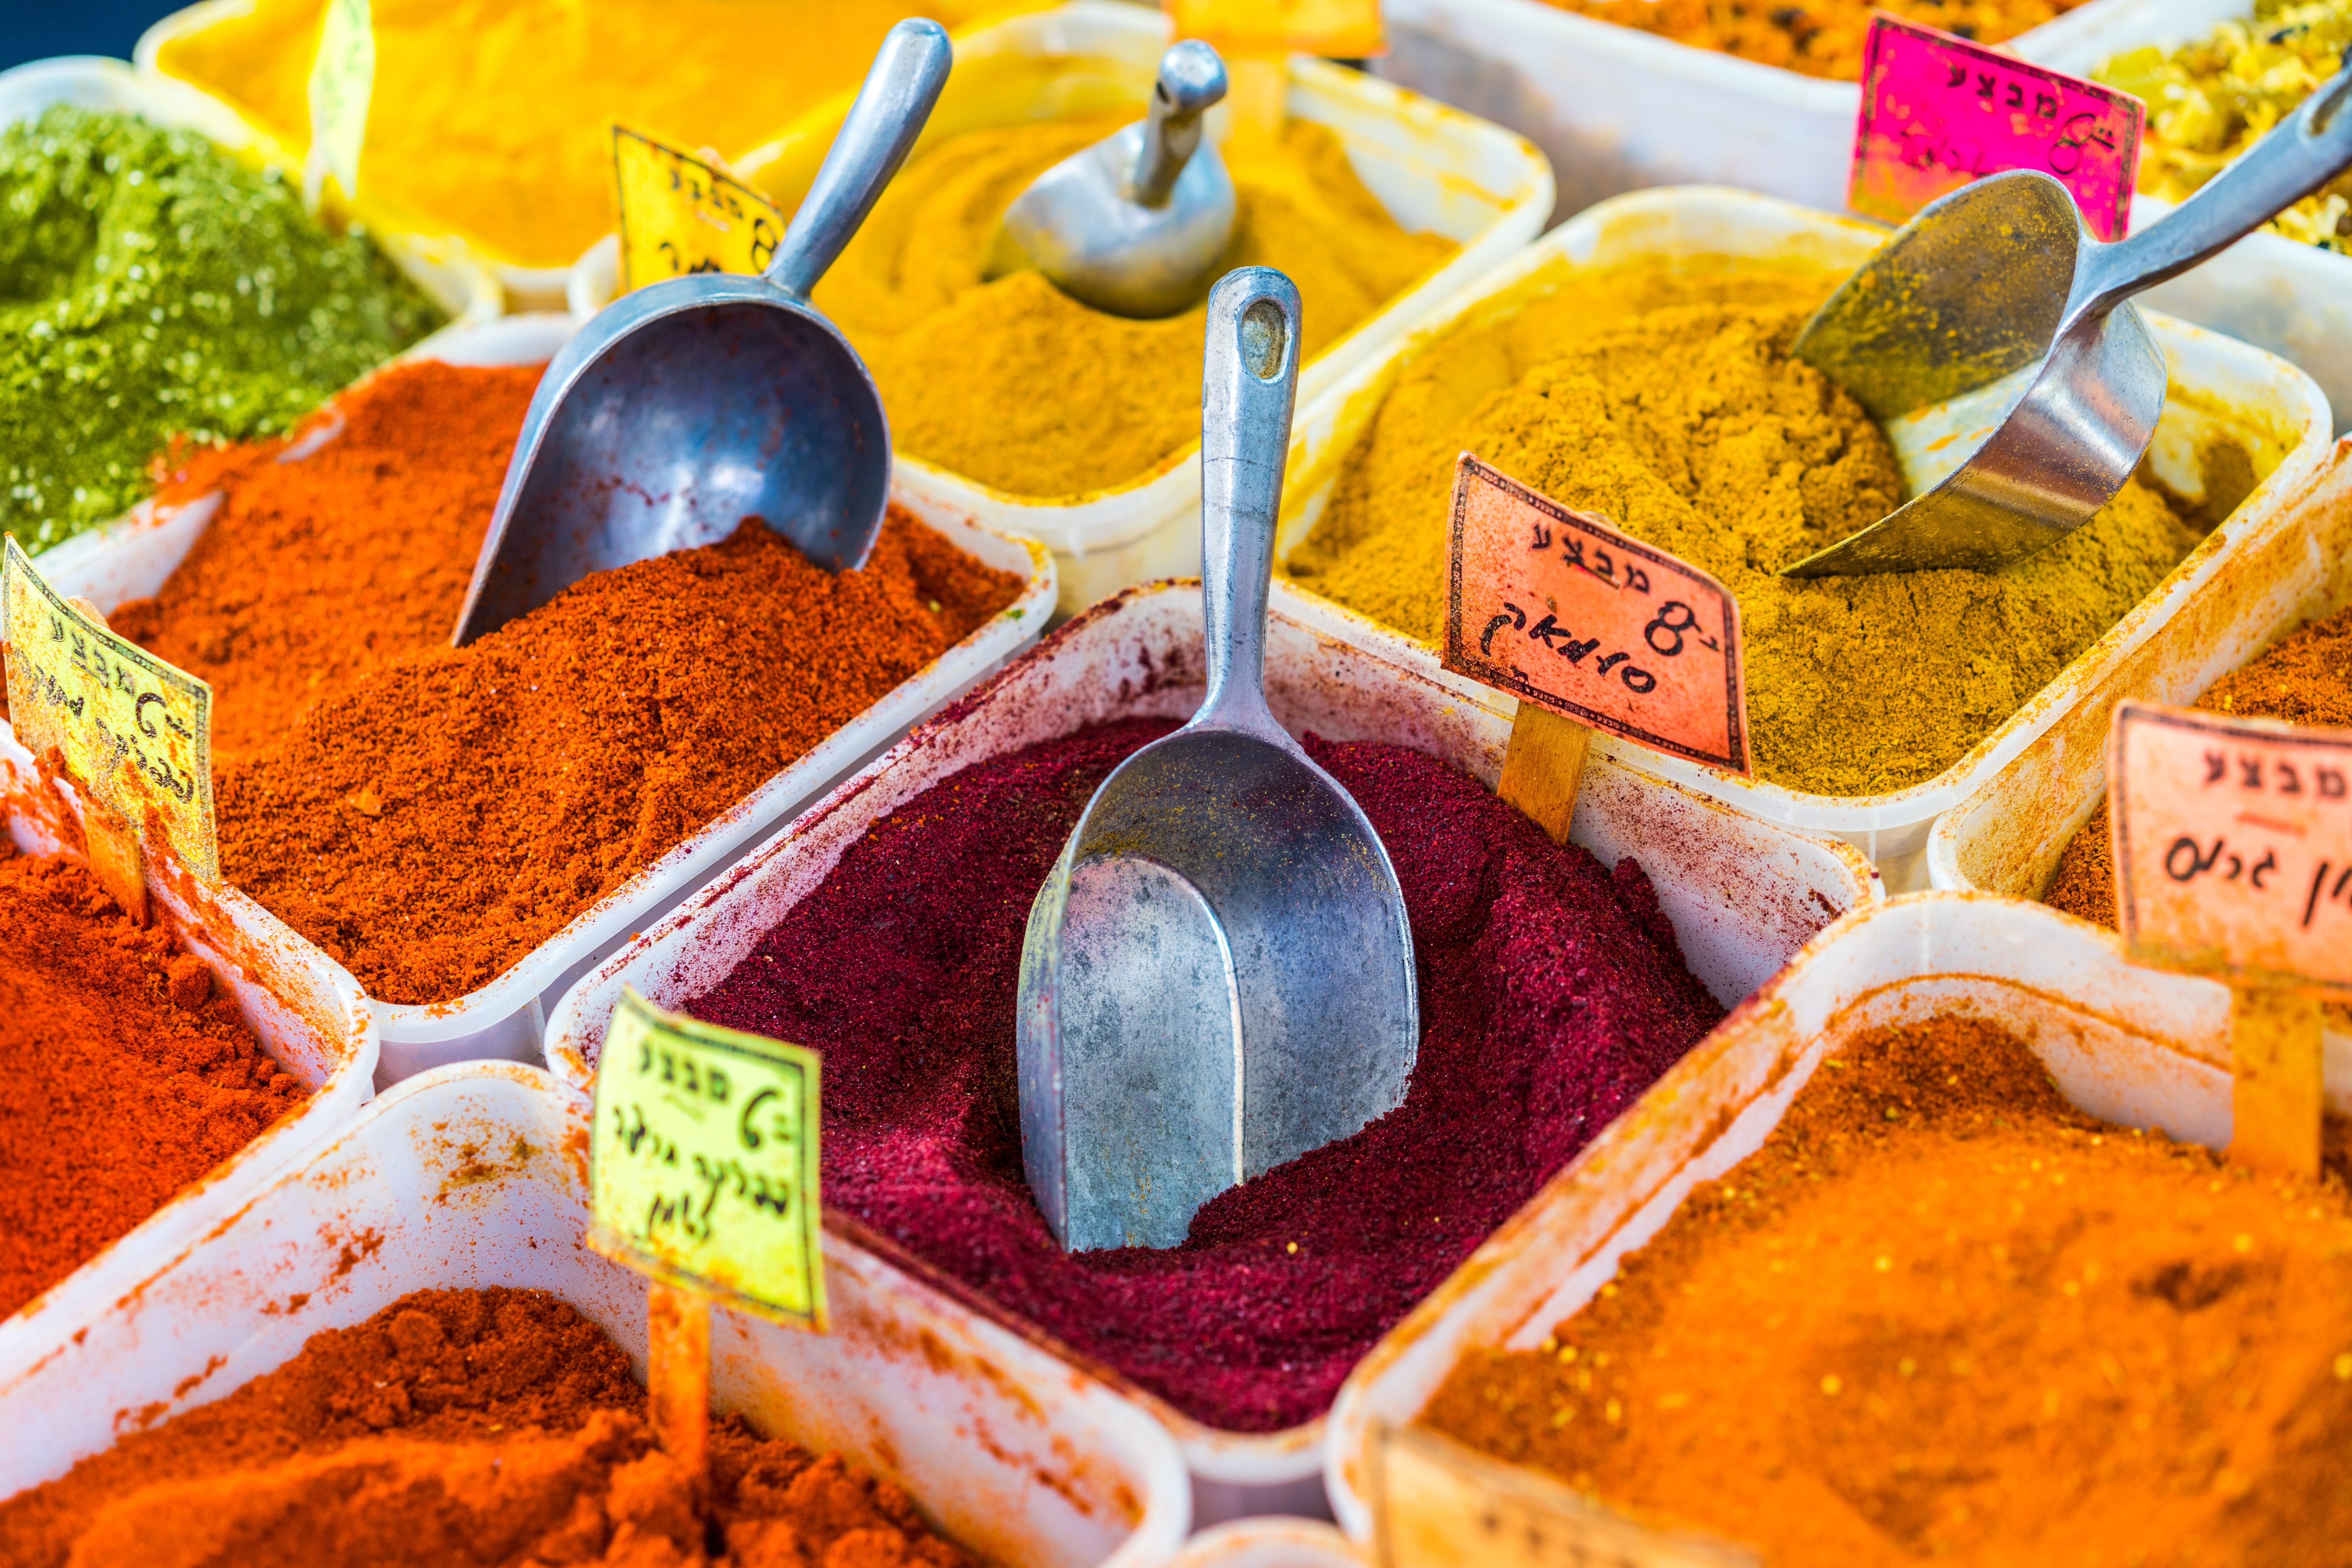 El chile o ají en polvo es uno de los ingredientes más utilizados en las cocinas de algunas partes del mundo